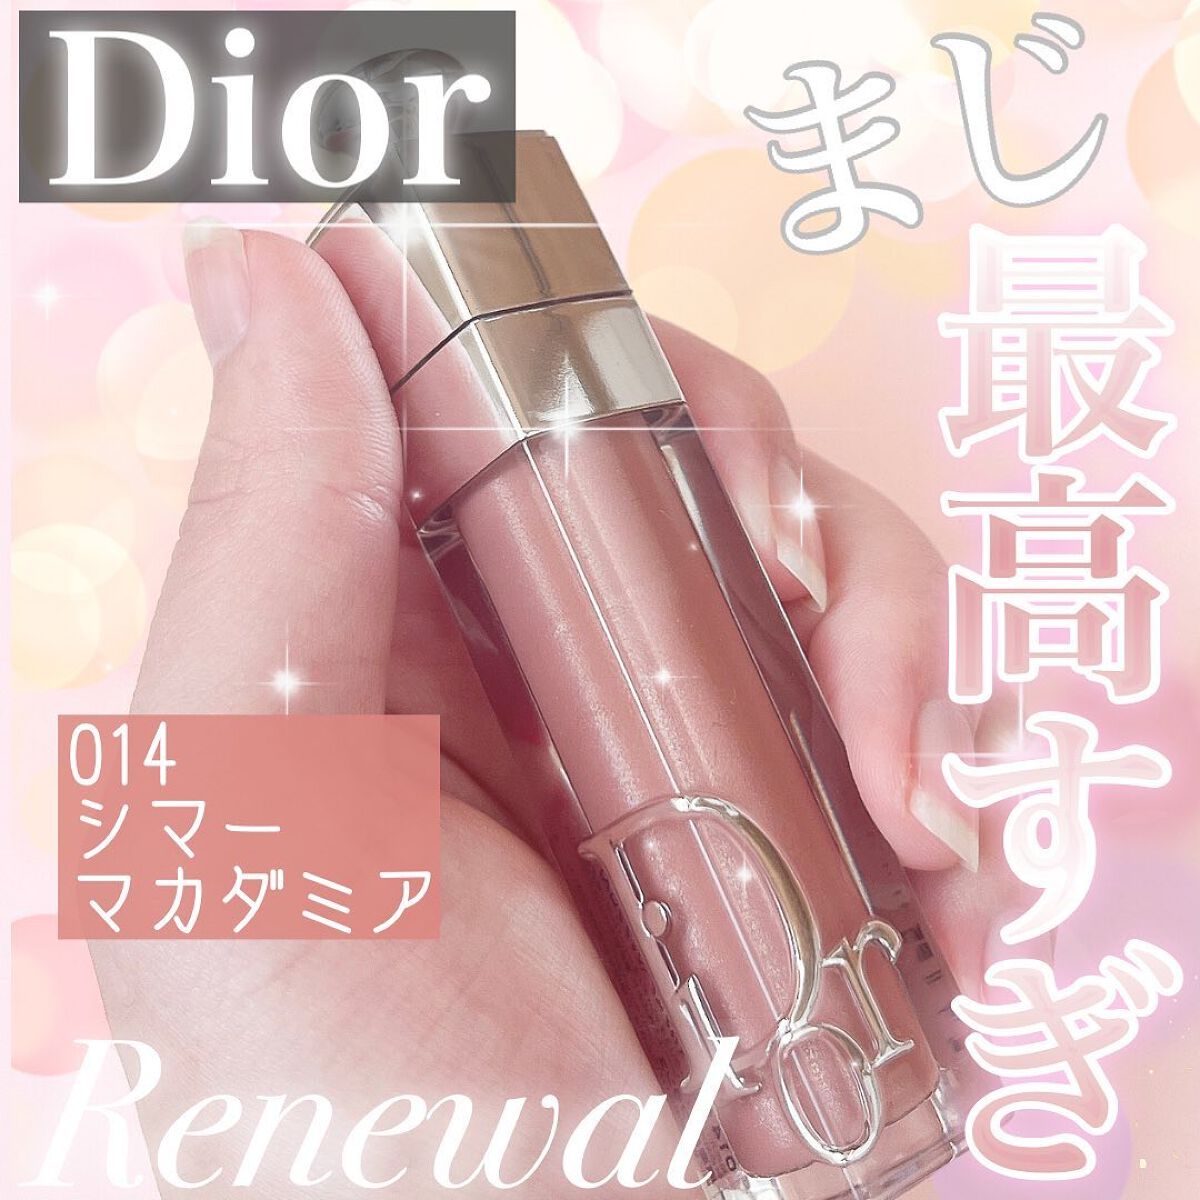 【掲載終了予定】Dior ディオール　マキシマイザー　014 シアーマカダミア